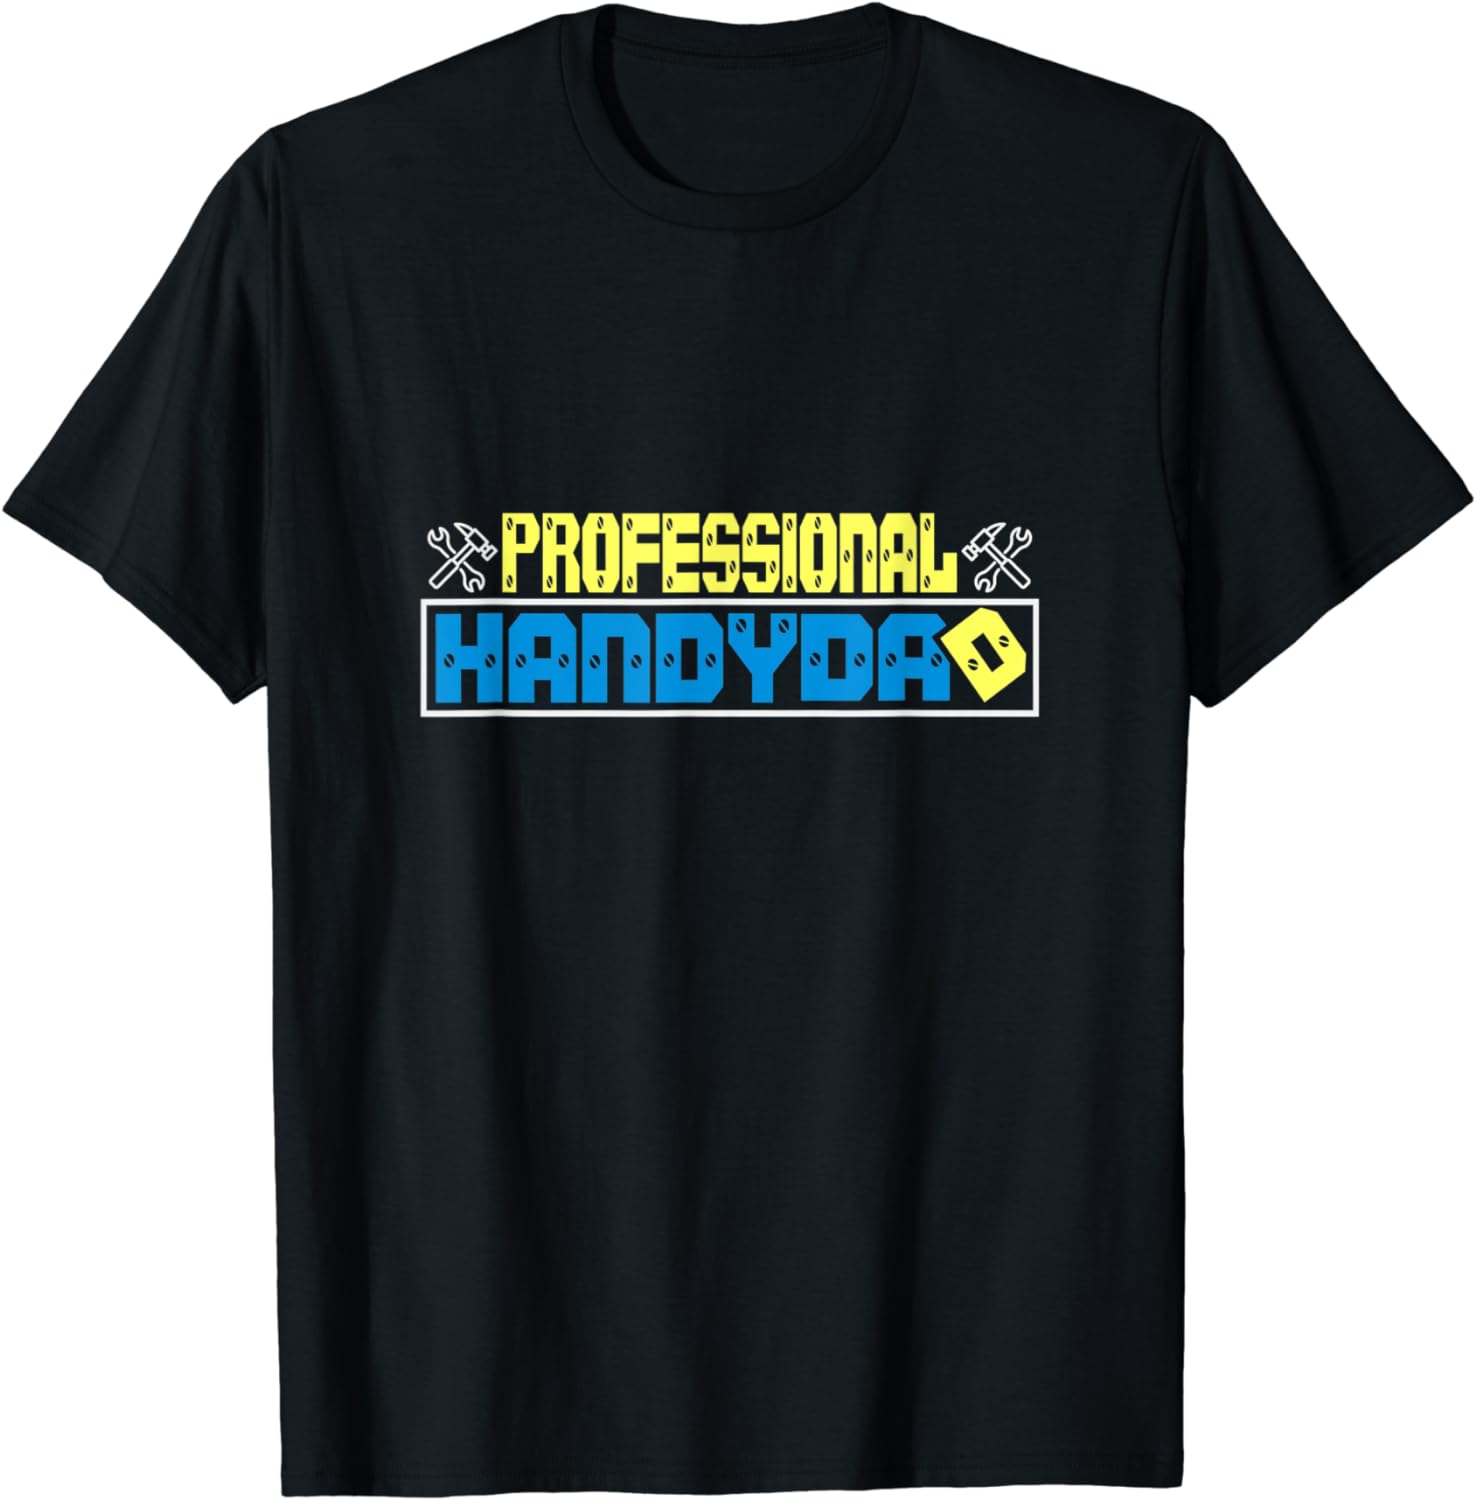 Professional HandyDad DIY T-Shirt